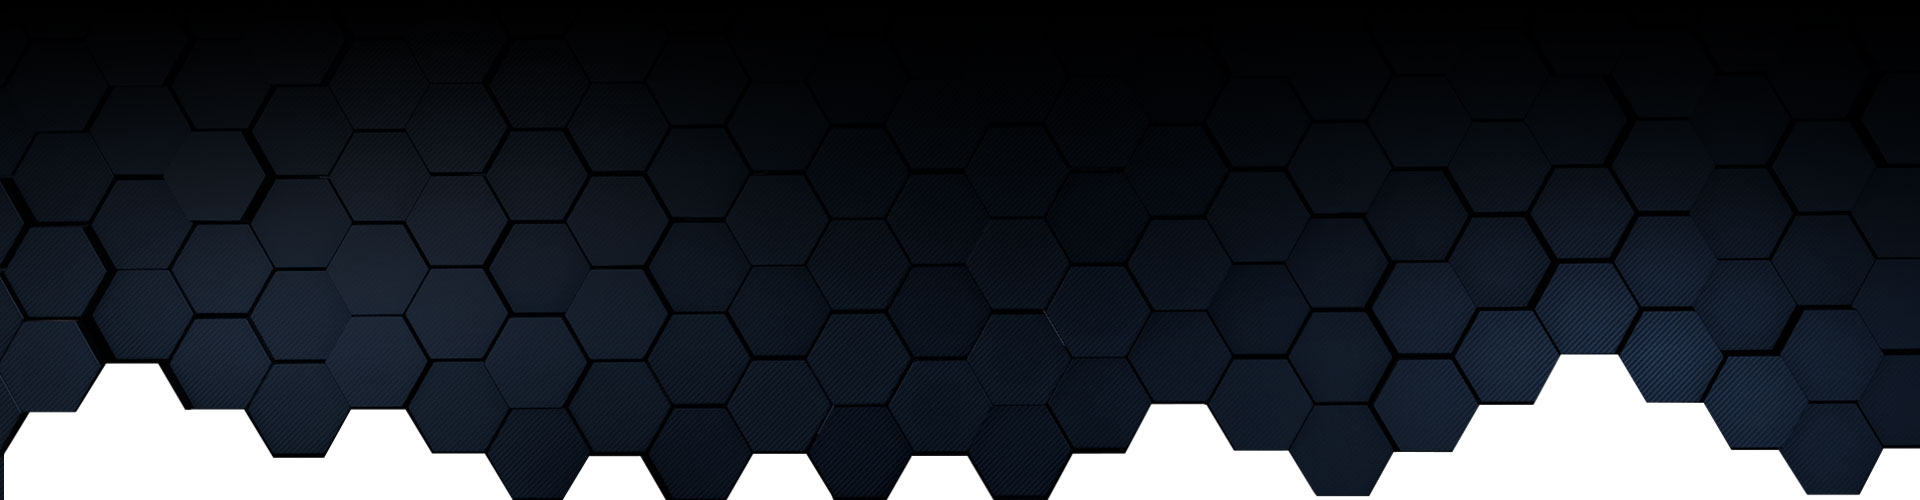 Ombre noire sur hexagones bleus